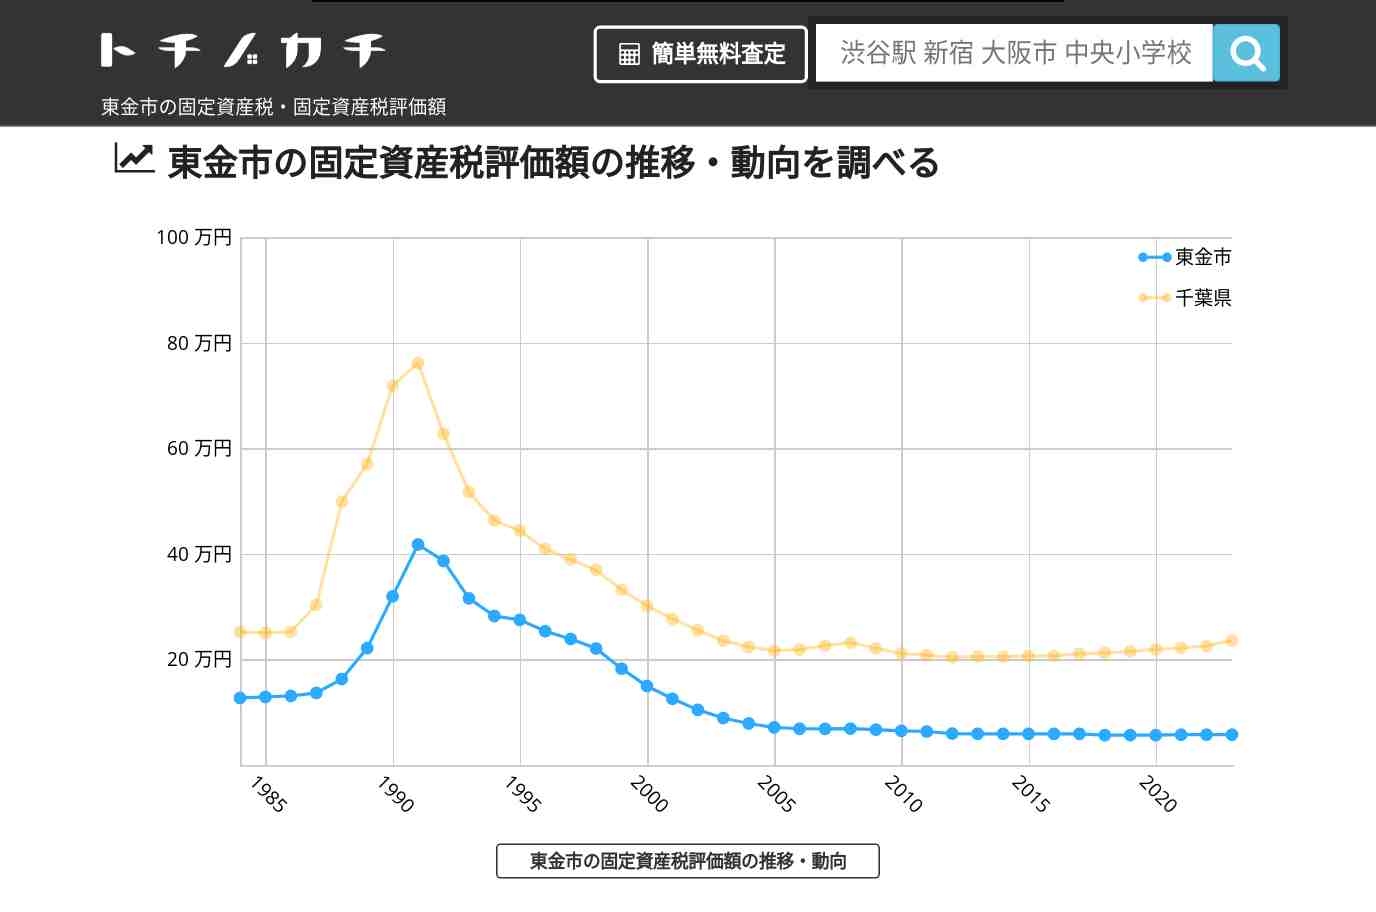 正気小学校(千葉県 東金市)周辺の固定資産税・固定資産税評価額 | トチノカチ